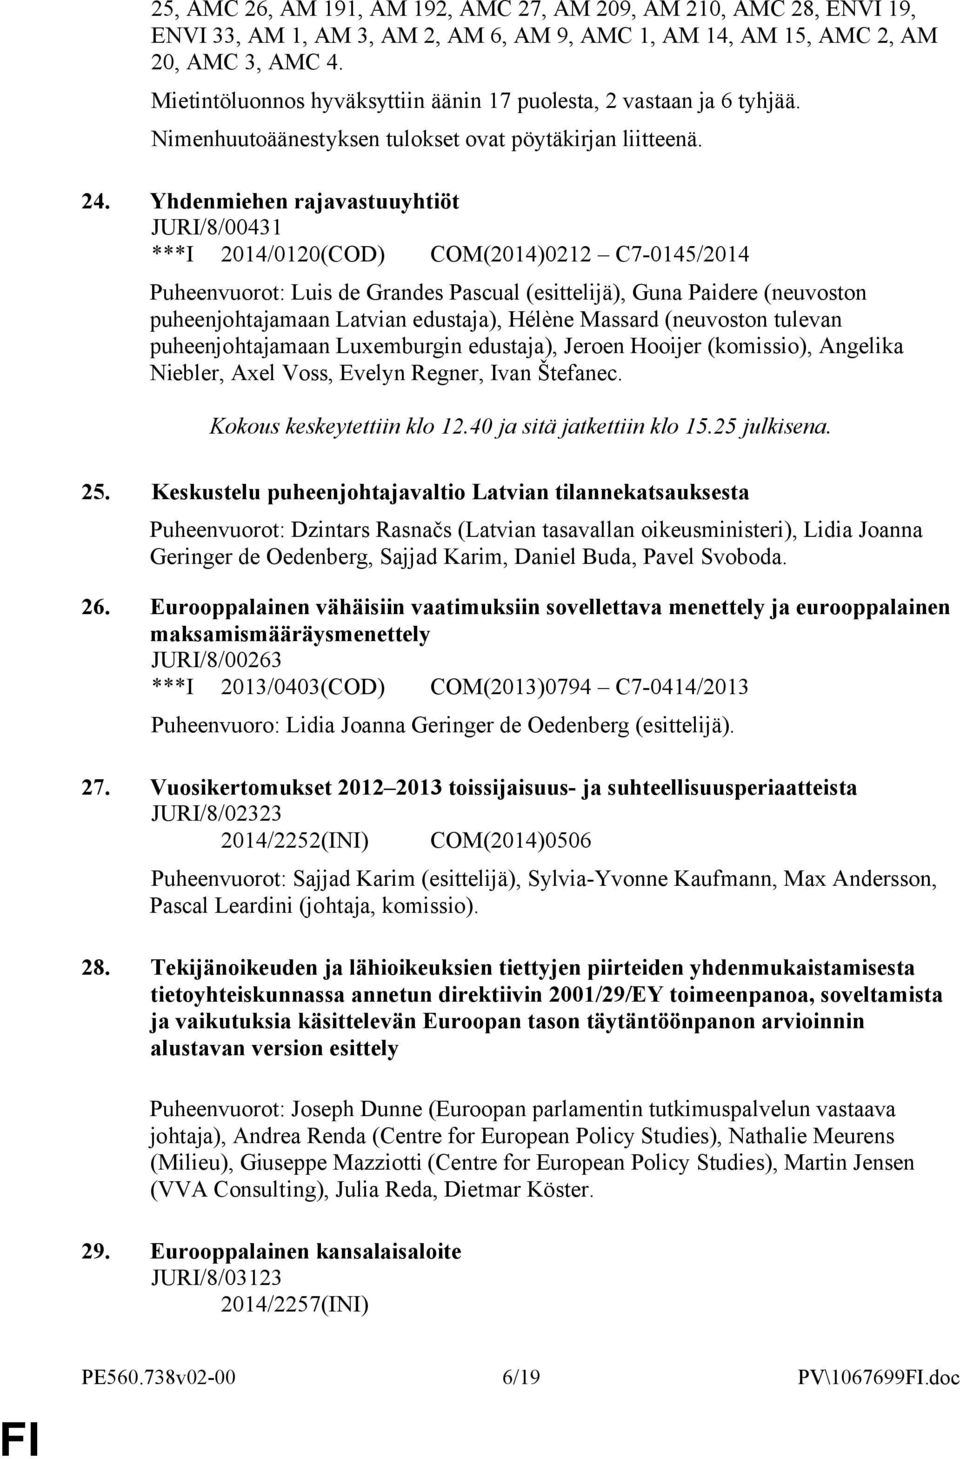 Yhdenmiehen rajavastuuyhtiöt JURI/8/431 ***I 214/12(COD) COM(214)212 C7-145/214 Puheenvuorot: Luis de Grandes Pascual (esittelijä), Guna Paidere (neuvoston puheenjohtajamaan Latvian edustaja), Hélène